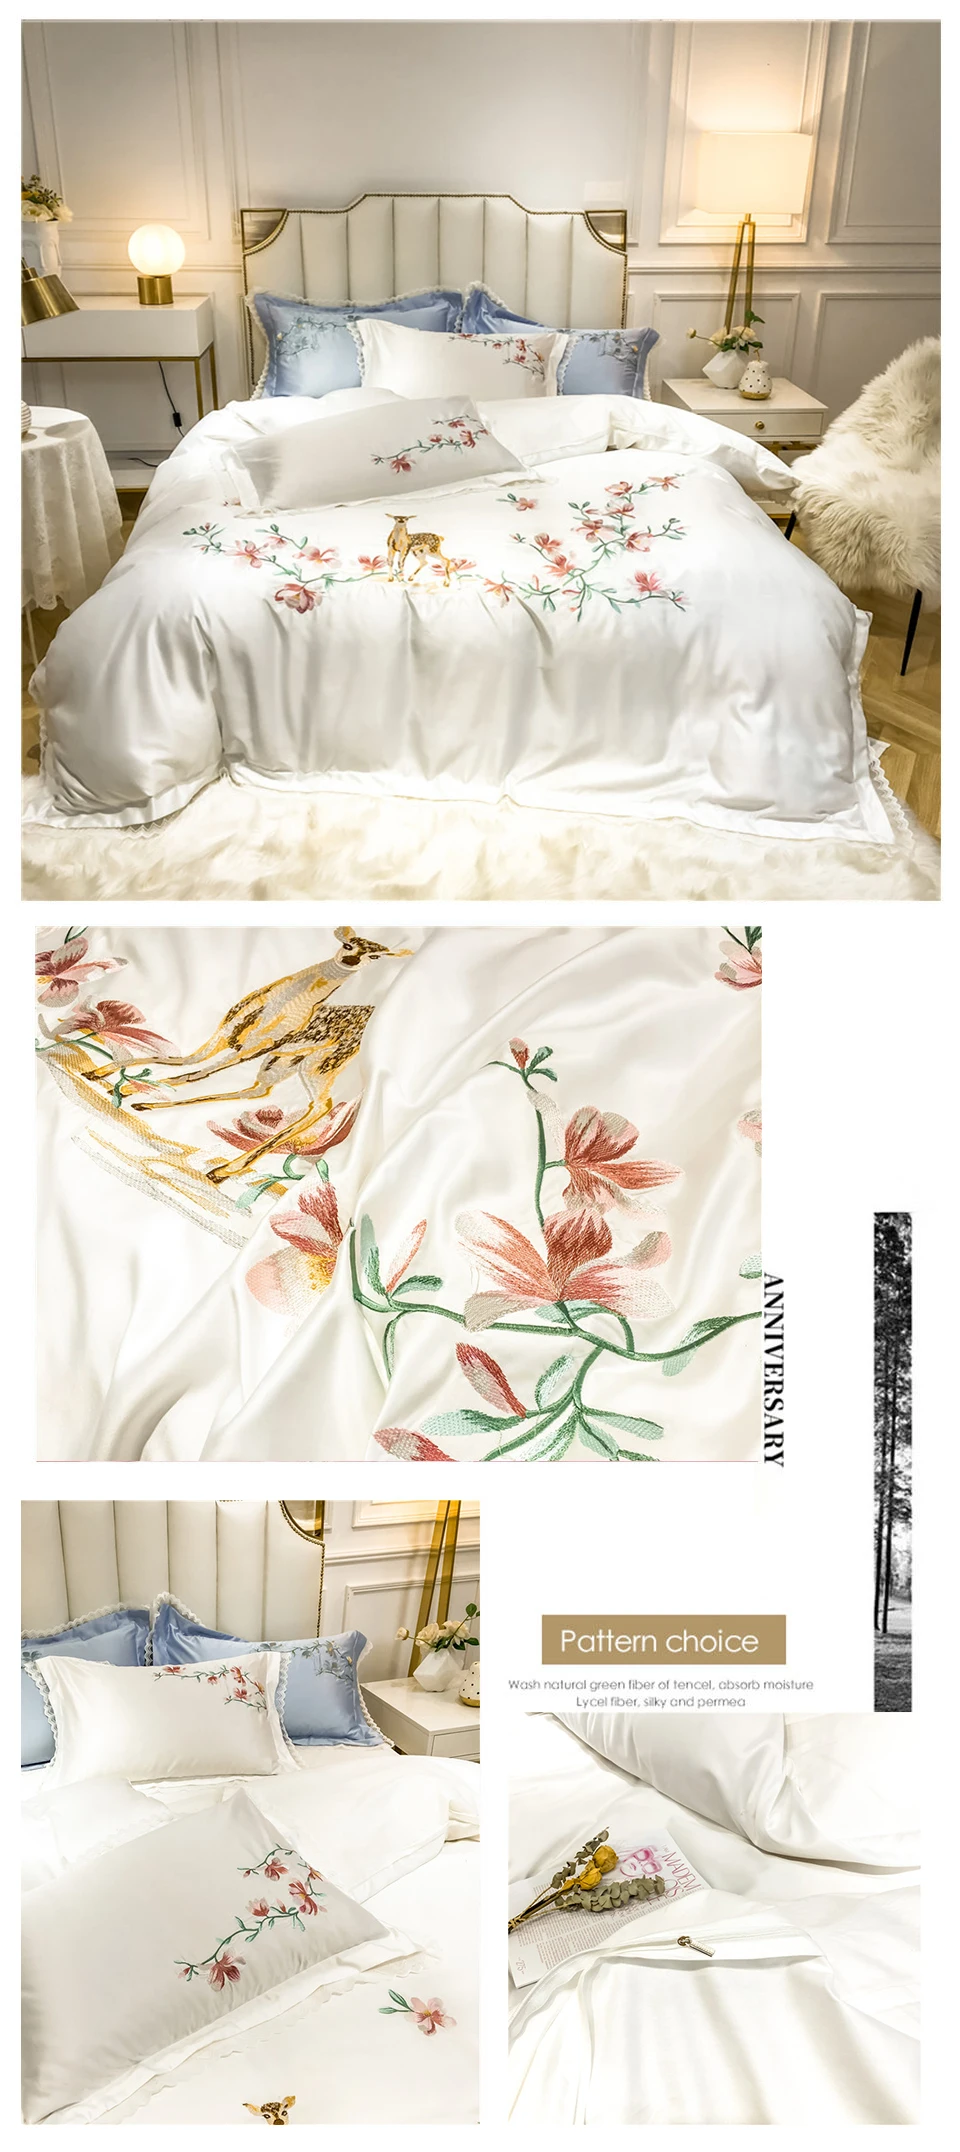 Liv-Esthete роскошный набор белых постельных принадлежностей с вышитыми цветами и оленями, набор пододеяльников из шелковистого хлопка, наволочка, двуспальное постельное белье для кровати кинг-сайз